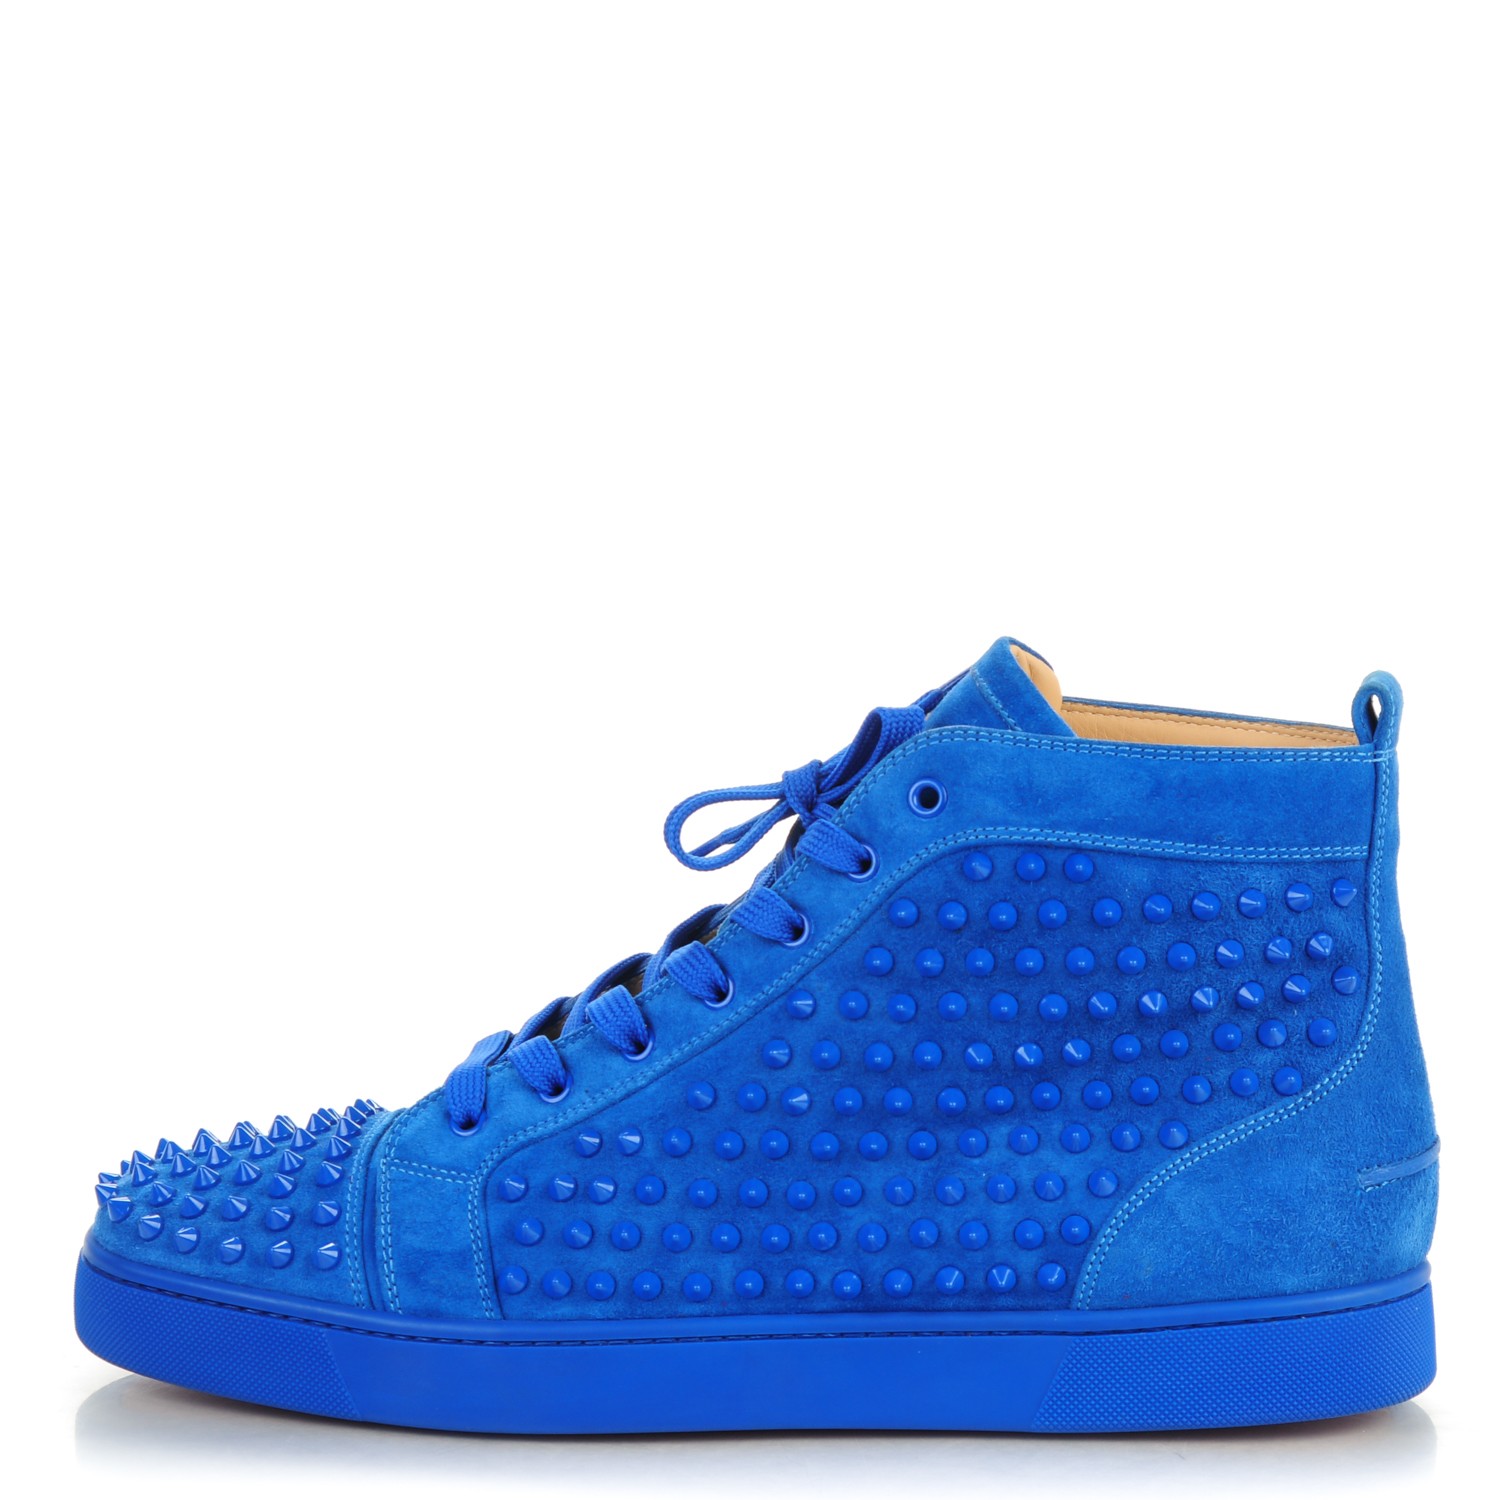 royal blue louboutin shoes